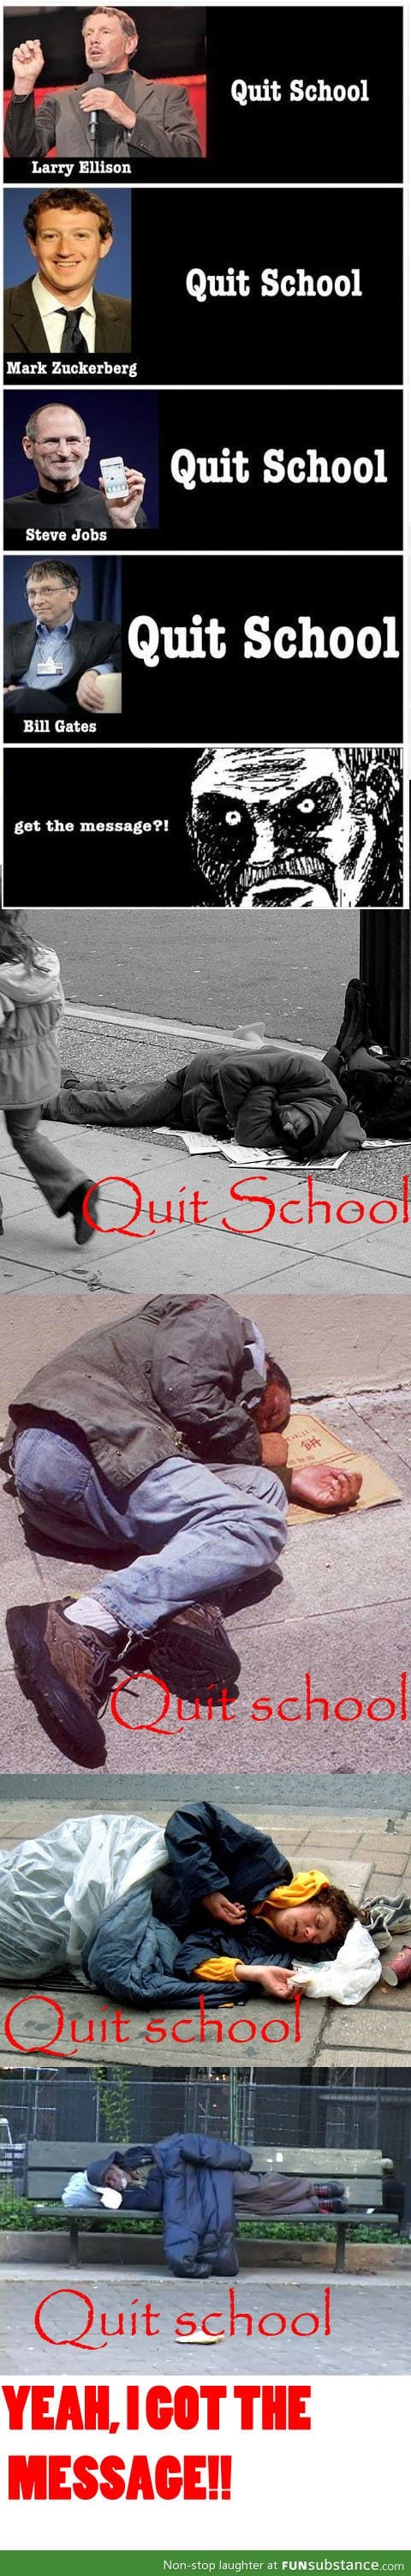 Quit school!